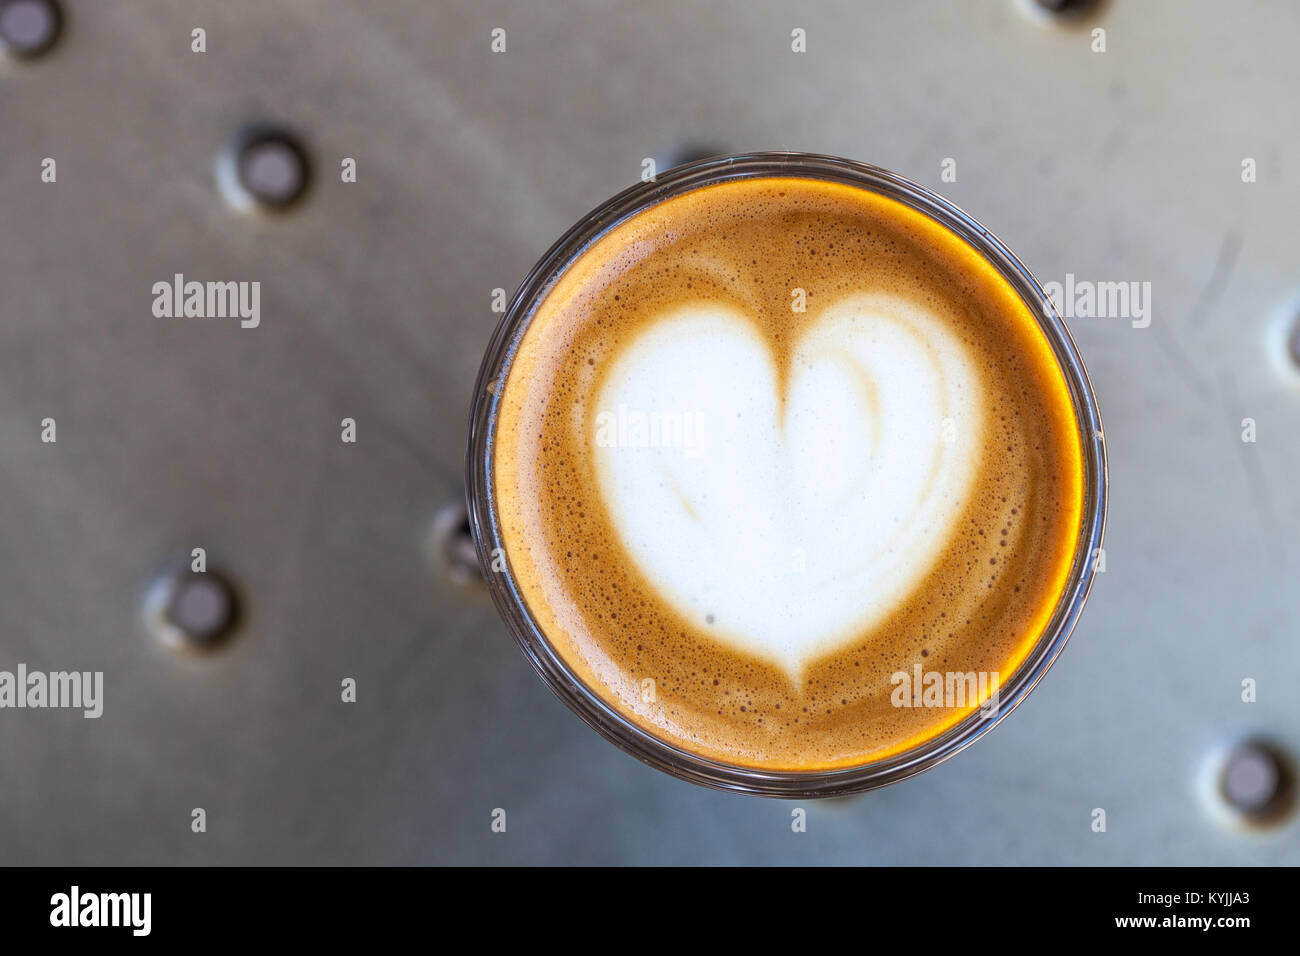 Vue de dessus du café cortado dans un verre avec de la mousse en forme de coeur Banque D'Images